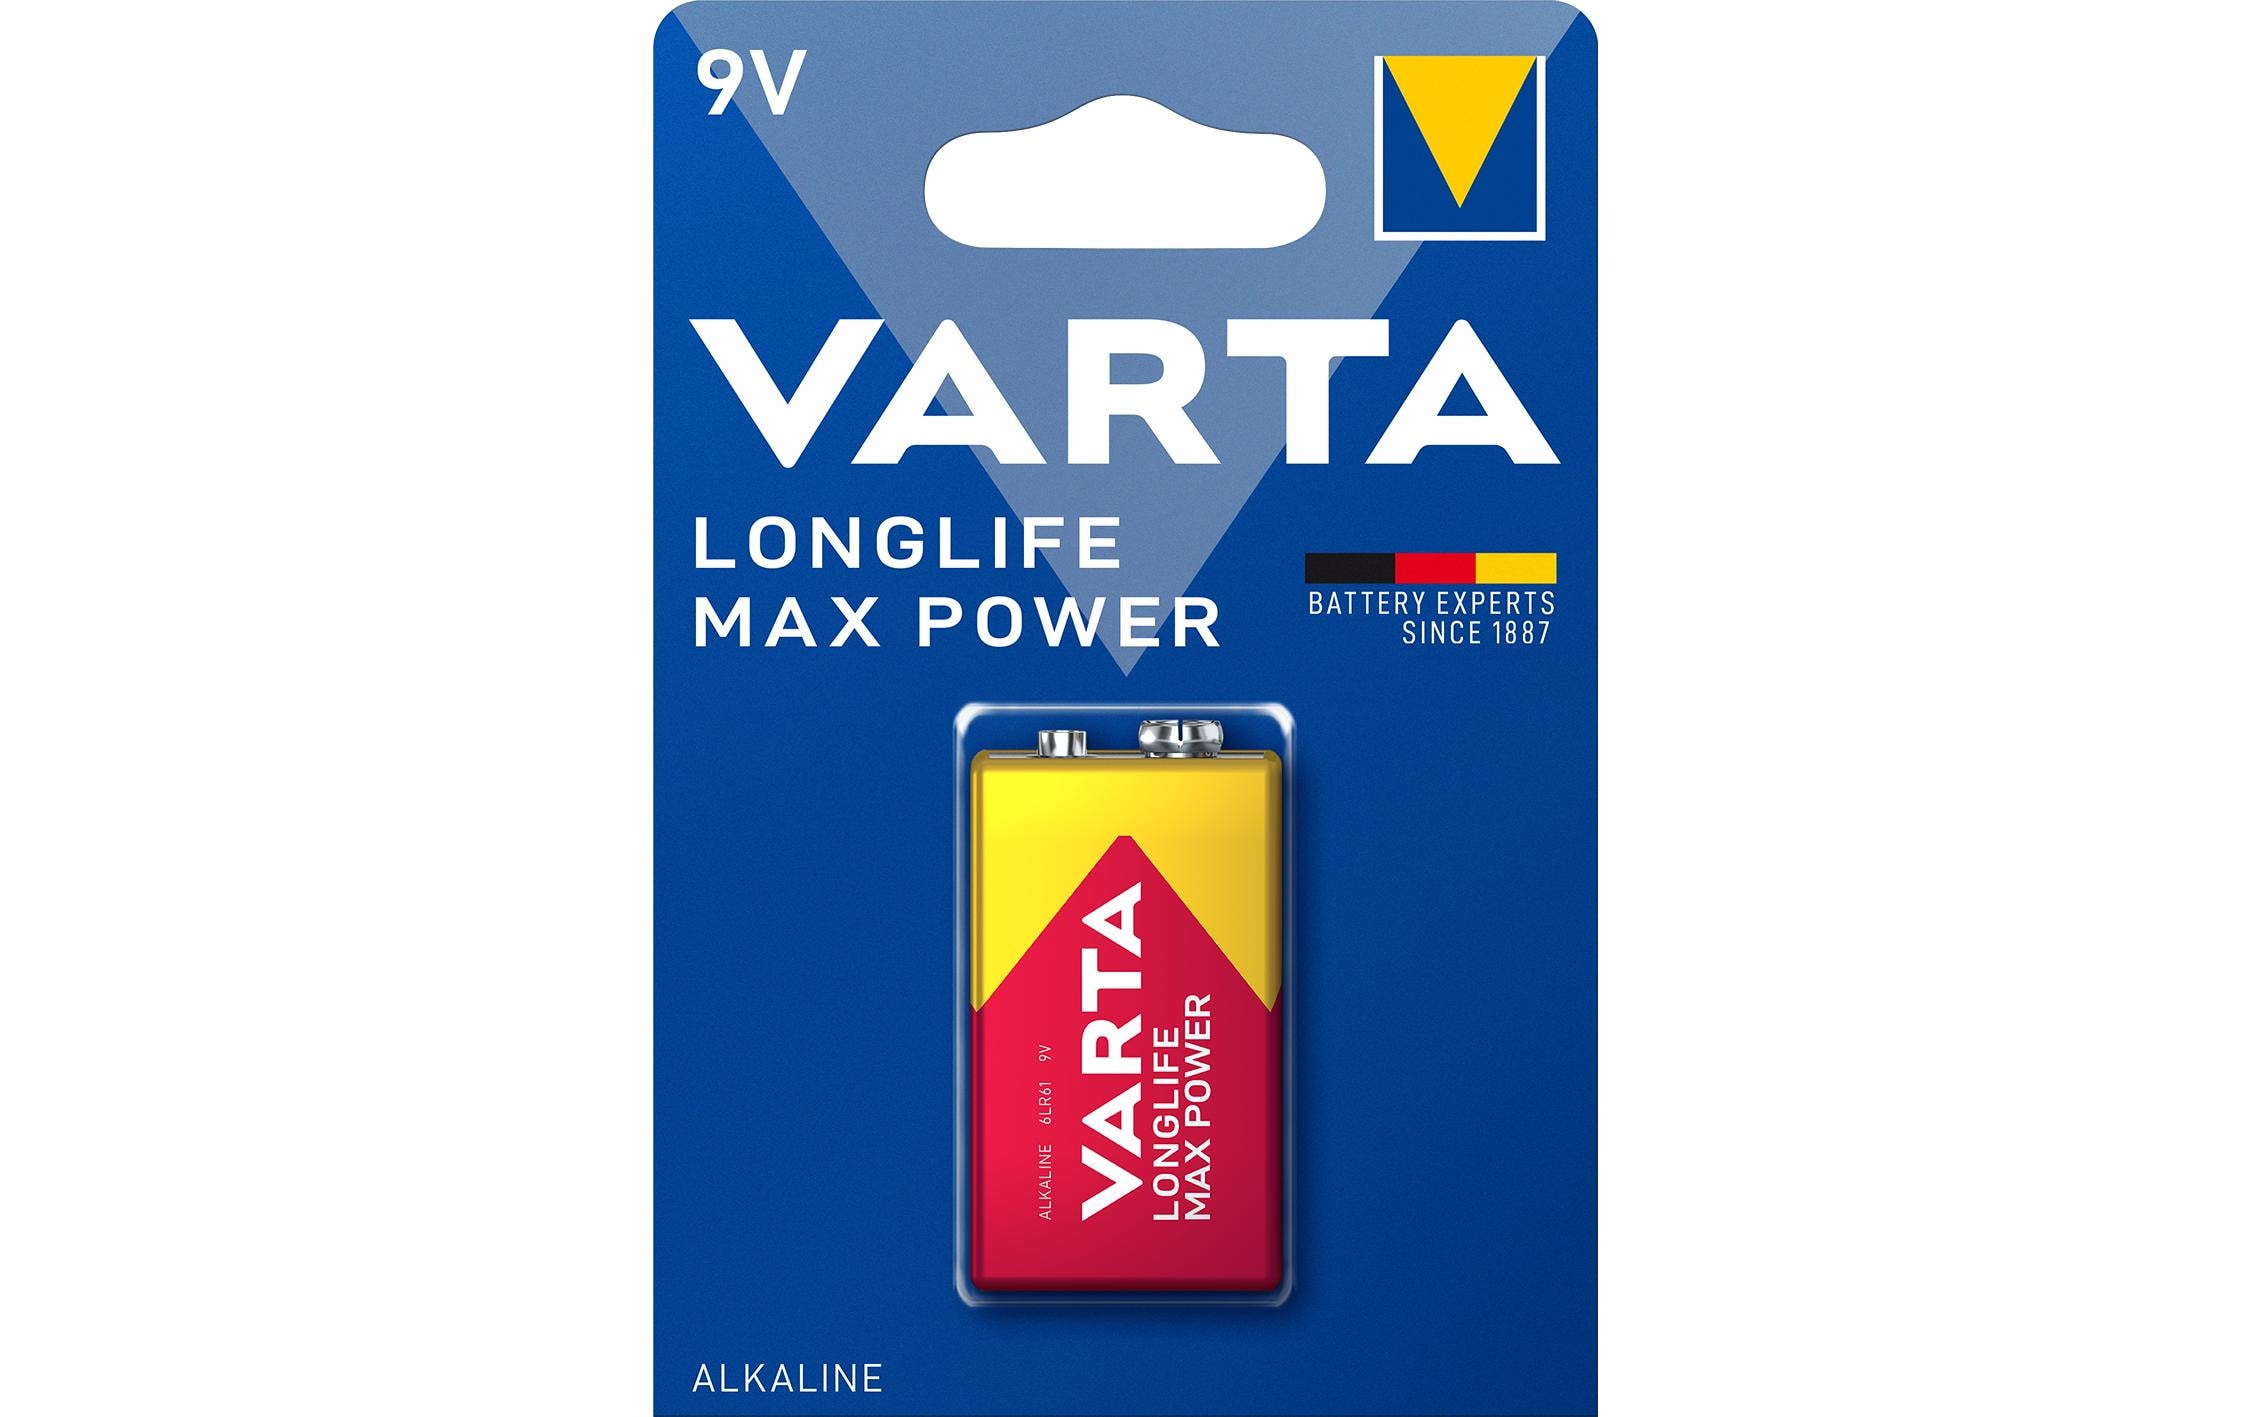 Varta Batterie Longlife Max Power 9 V 1 Stück